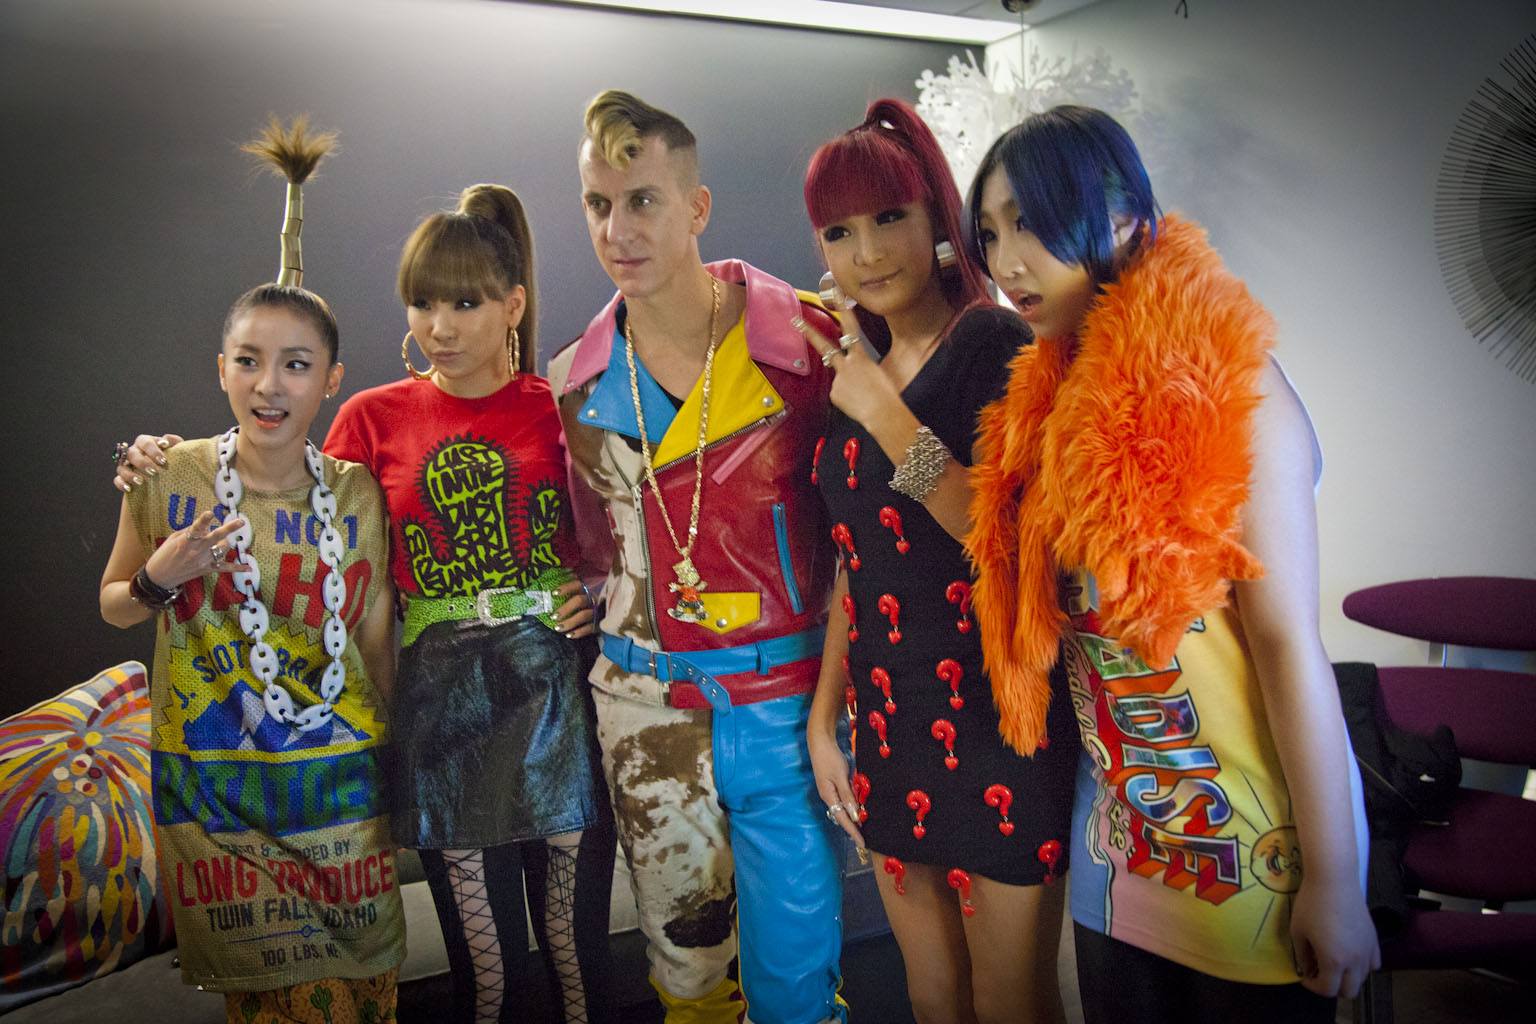 2NE1 pose with Jeremy Scott backstage.